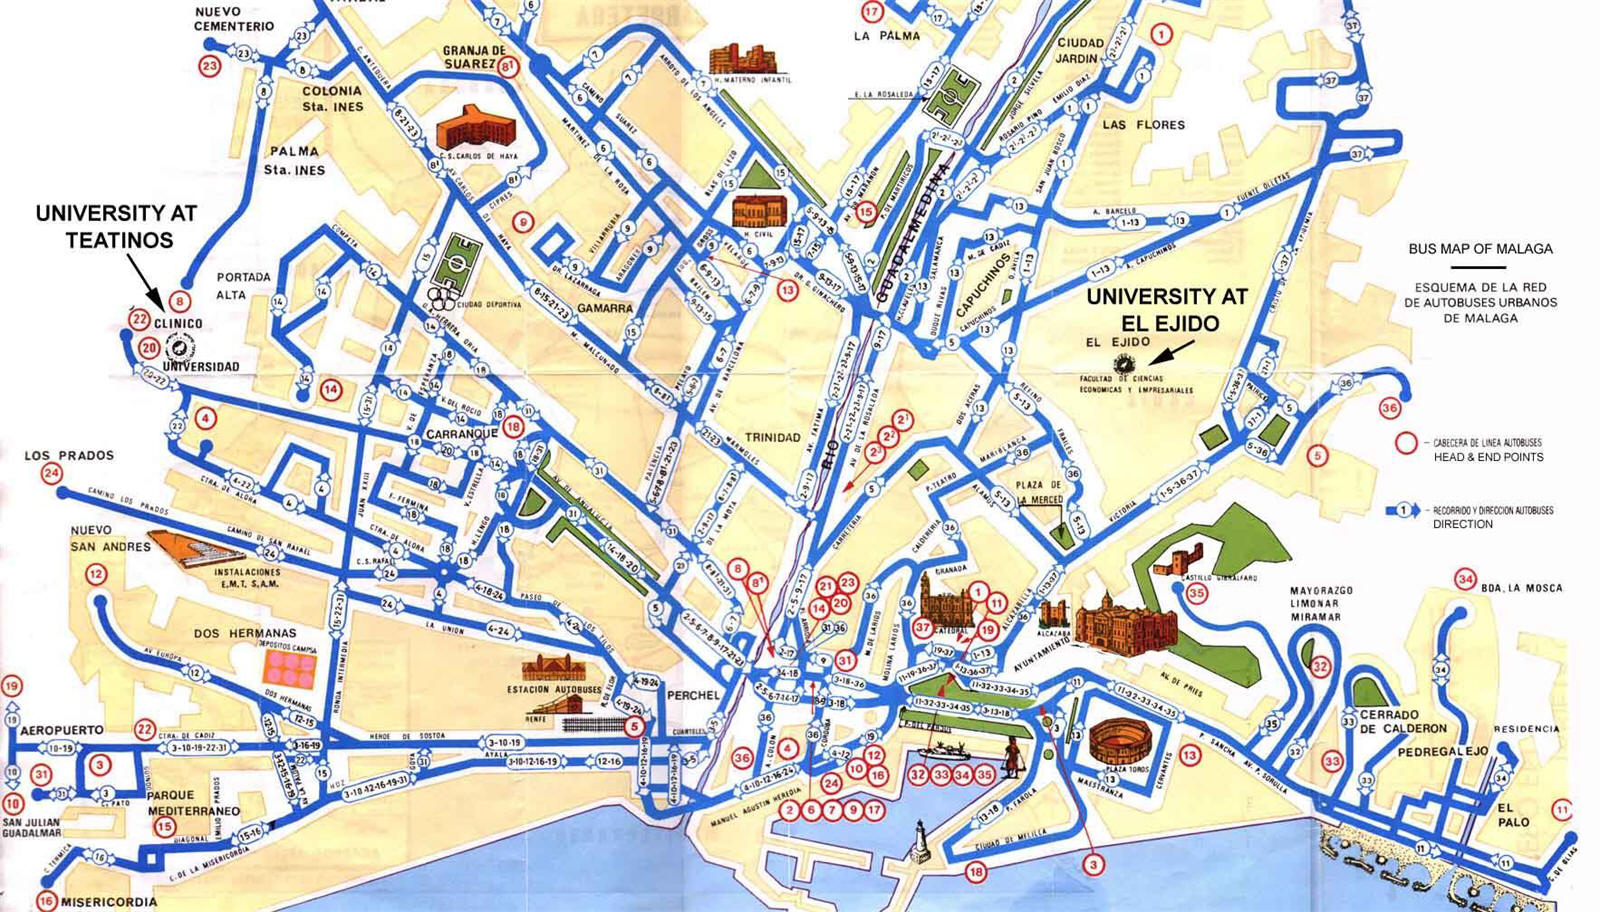 Tourist map of Málaga - Full size | Gifex